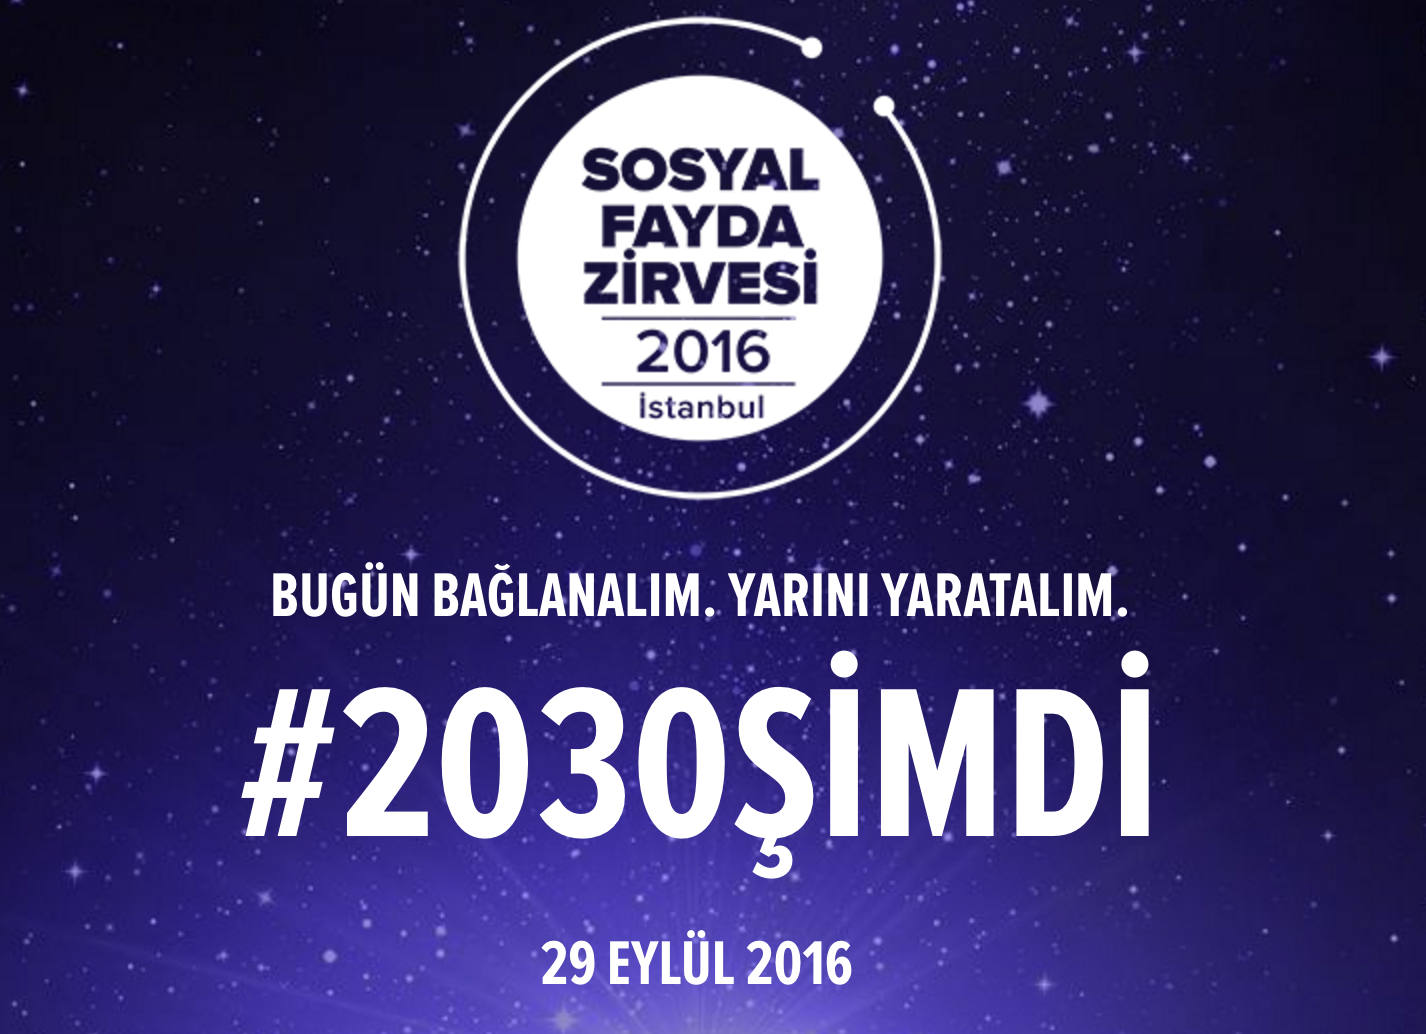 Sosyal Fayda Zirvesi 29 Eylül’de İstanbul’da